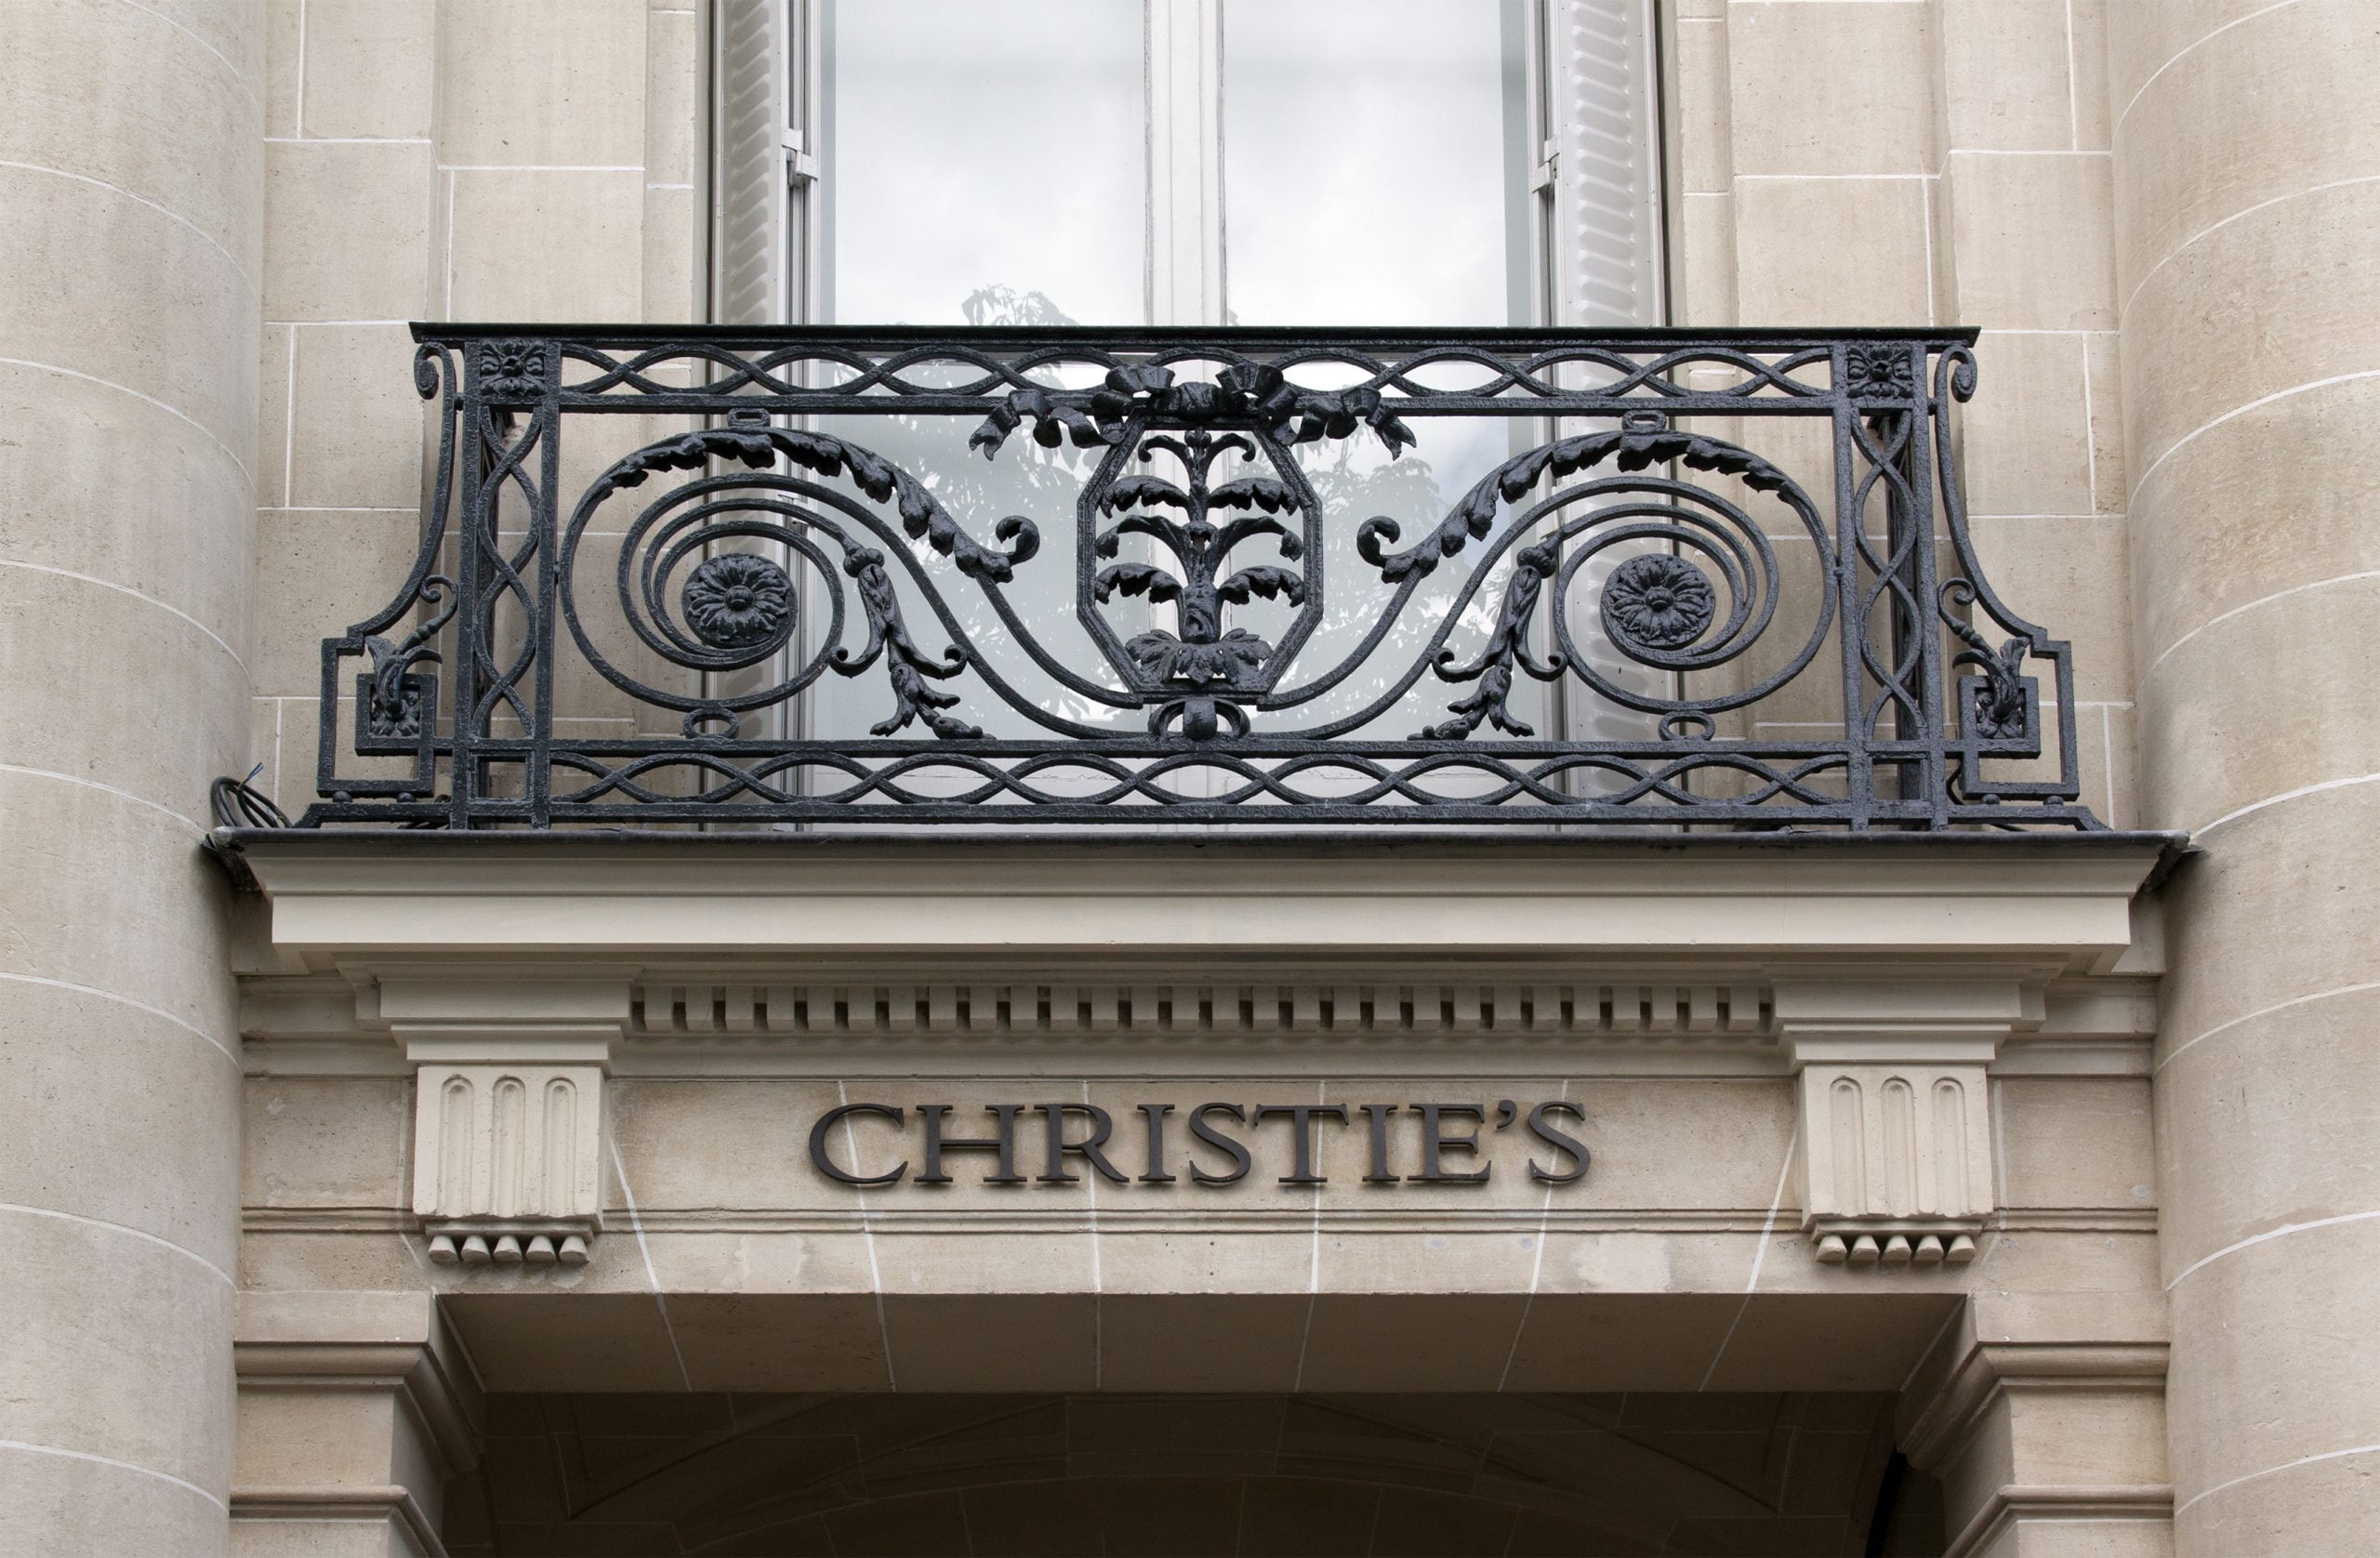 Vânzările casei Christie’s în 2021